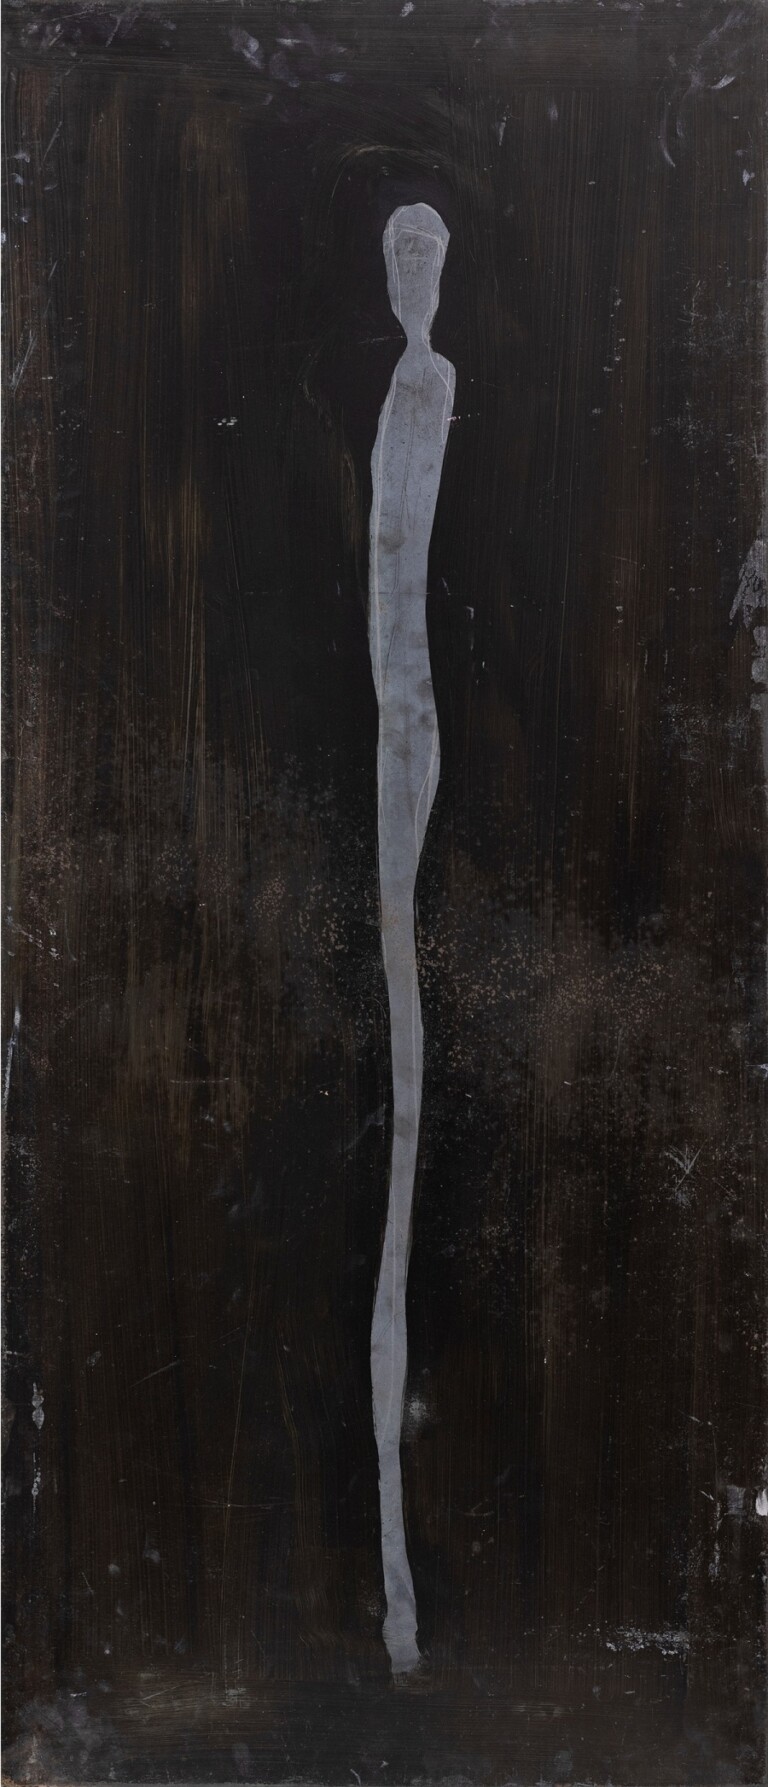 Roberto Ciaccio, Senza titolo (fronte), 2010 11, lastra di ferro, 126 x 54 cm. Photo Leonardo Morfini